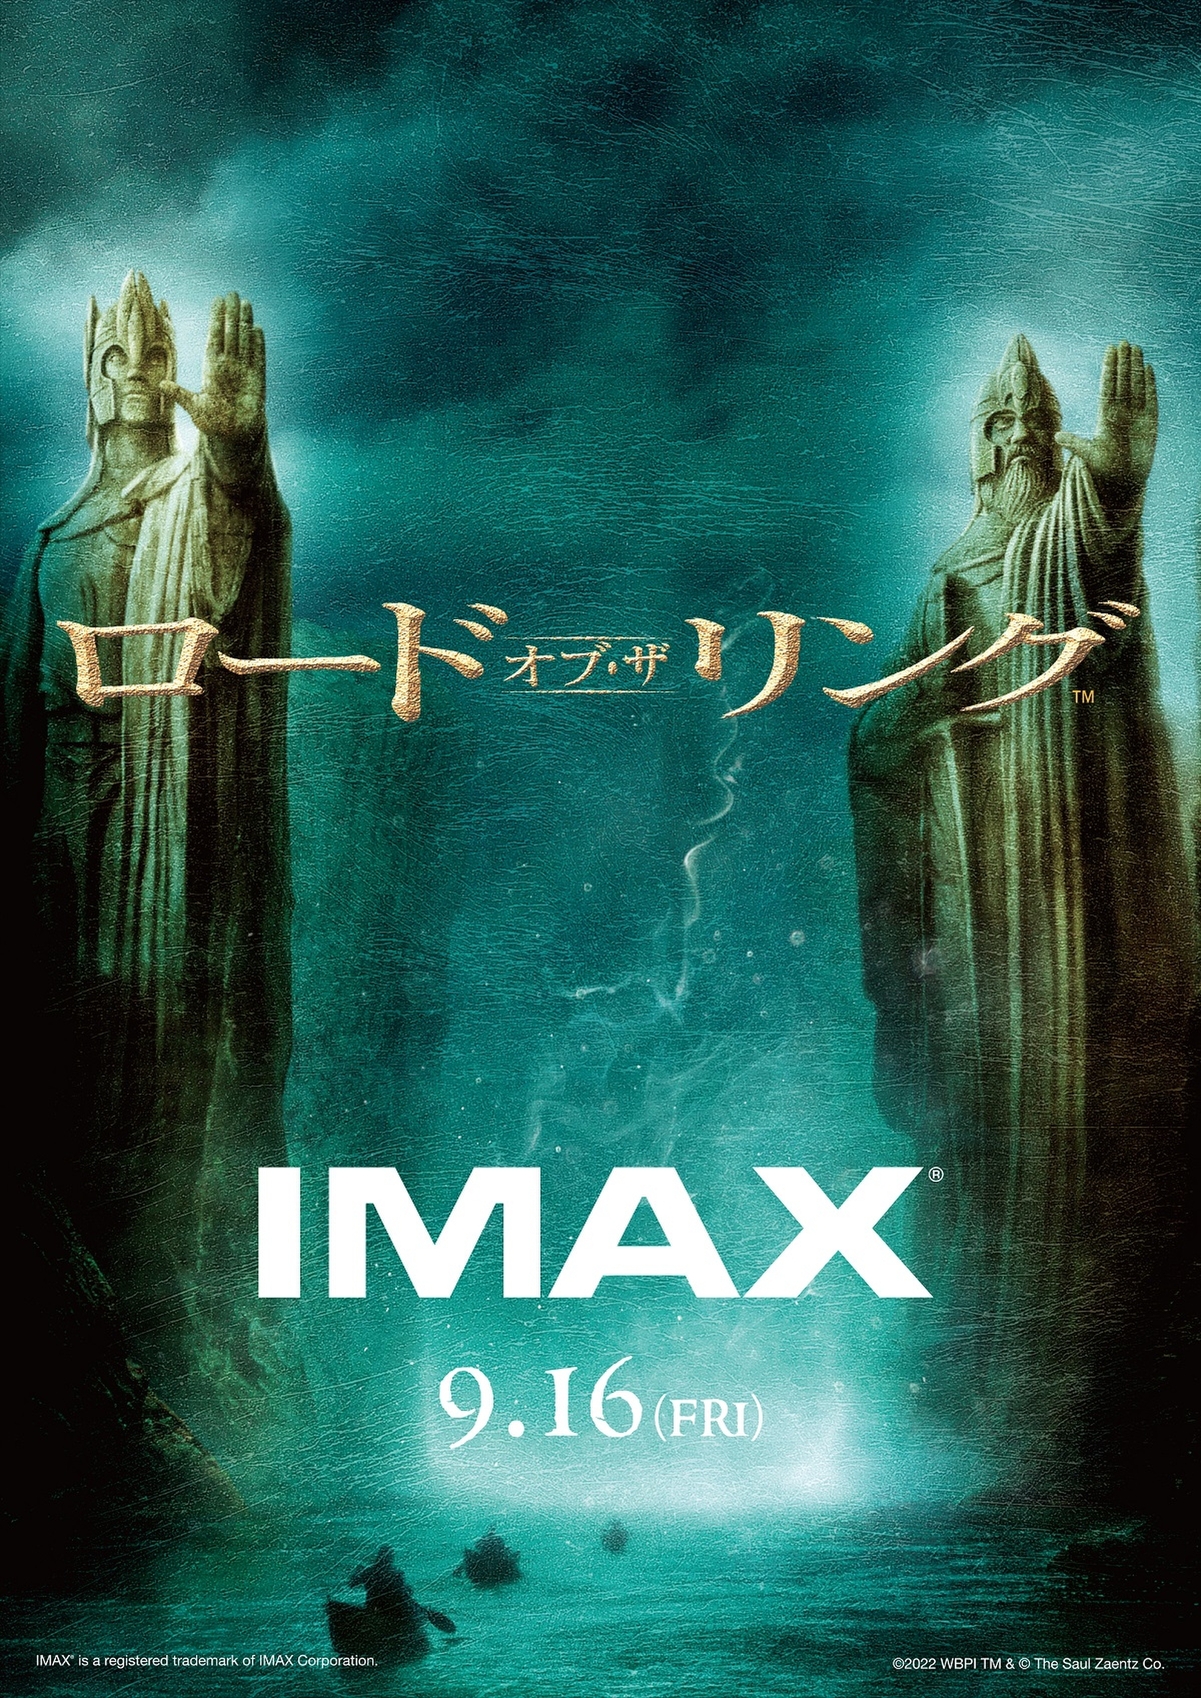 ロード・オブ・ザ・リング」シリーズ3部作、IMAXでの公開日が決定！ 新 